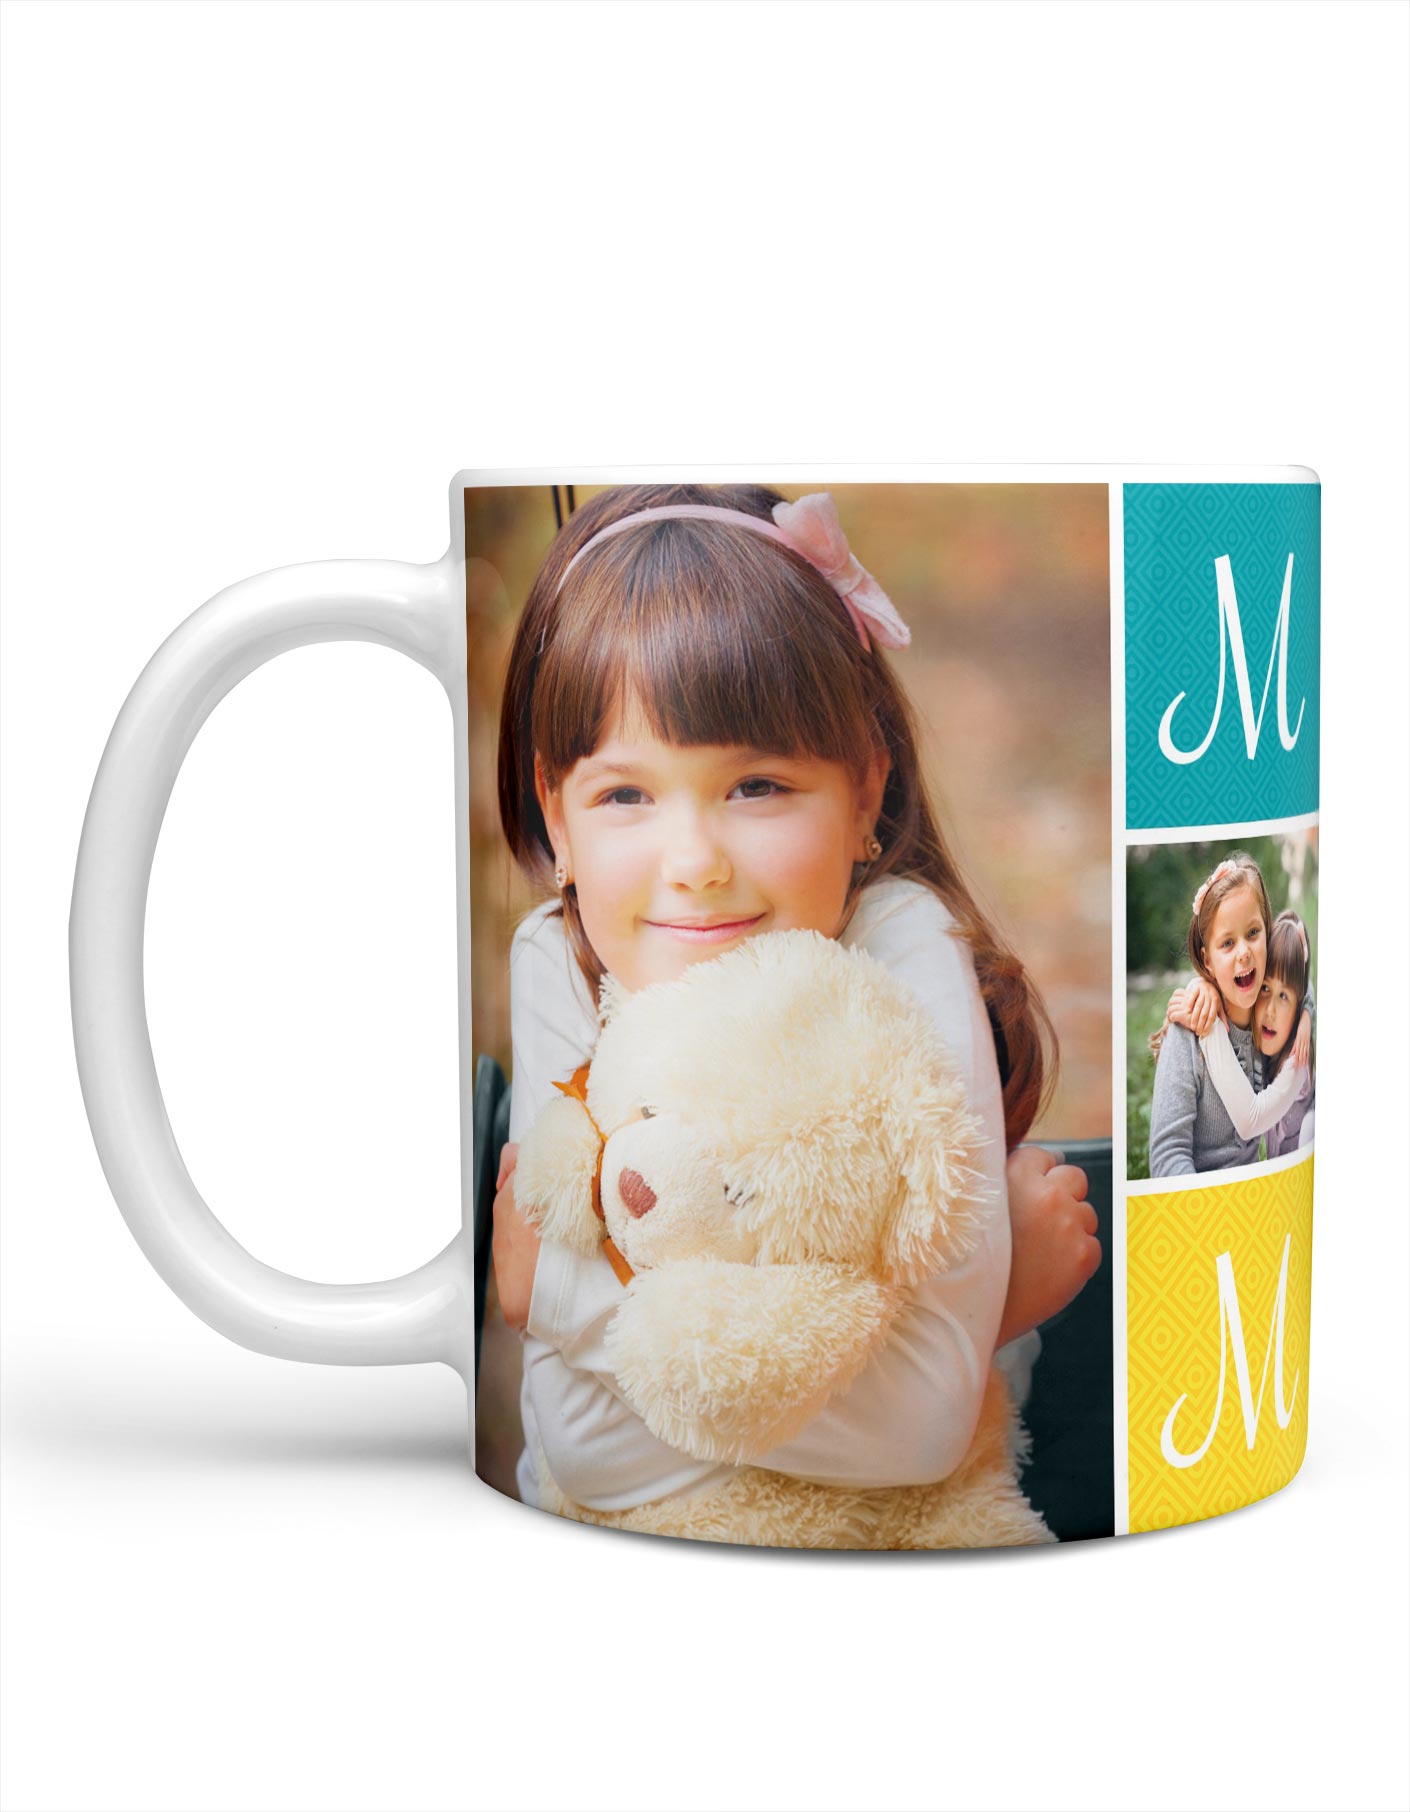 Custom Mother's Day Mugs For Mom